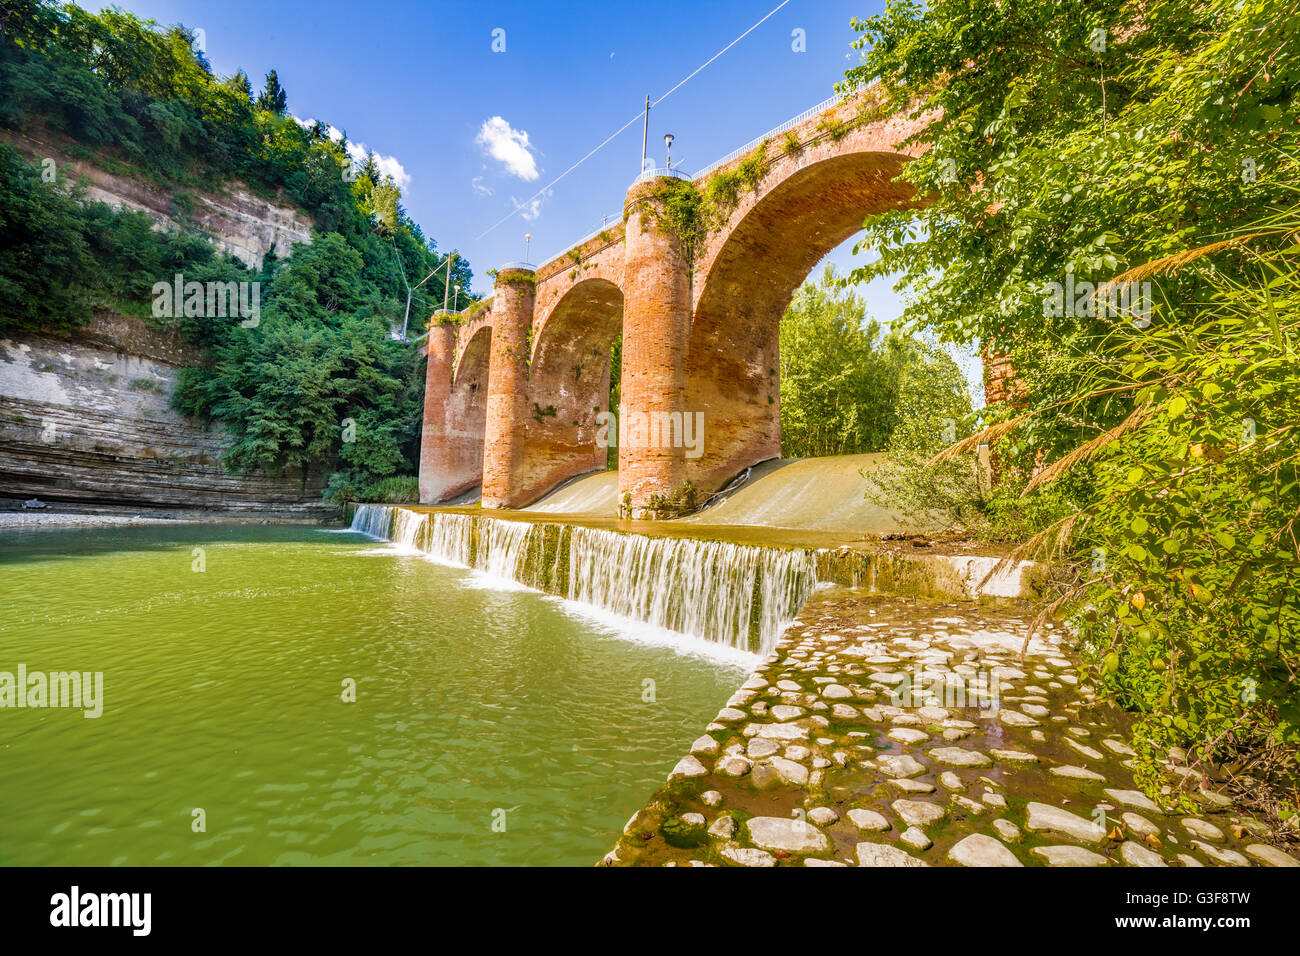 Frischen Wasser des Flusses unter vierzehnten Jahrhundert Brücke im Mauerwerk in einem kleinen Dorf in den Hügeln in Romagna, Italien Stockfoto